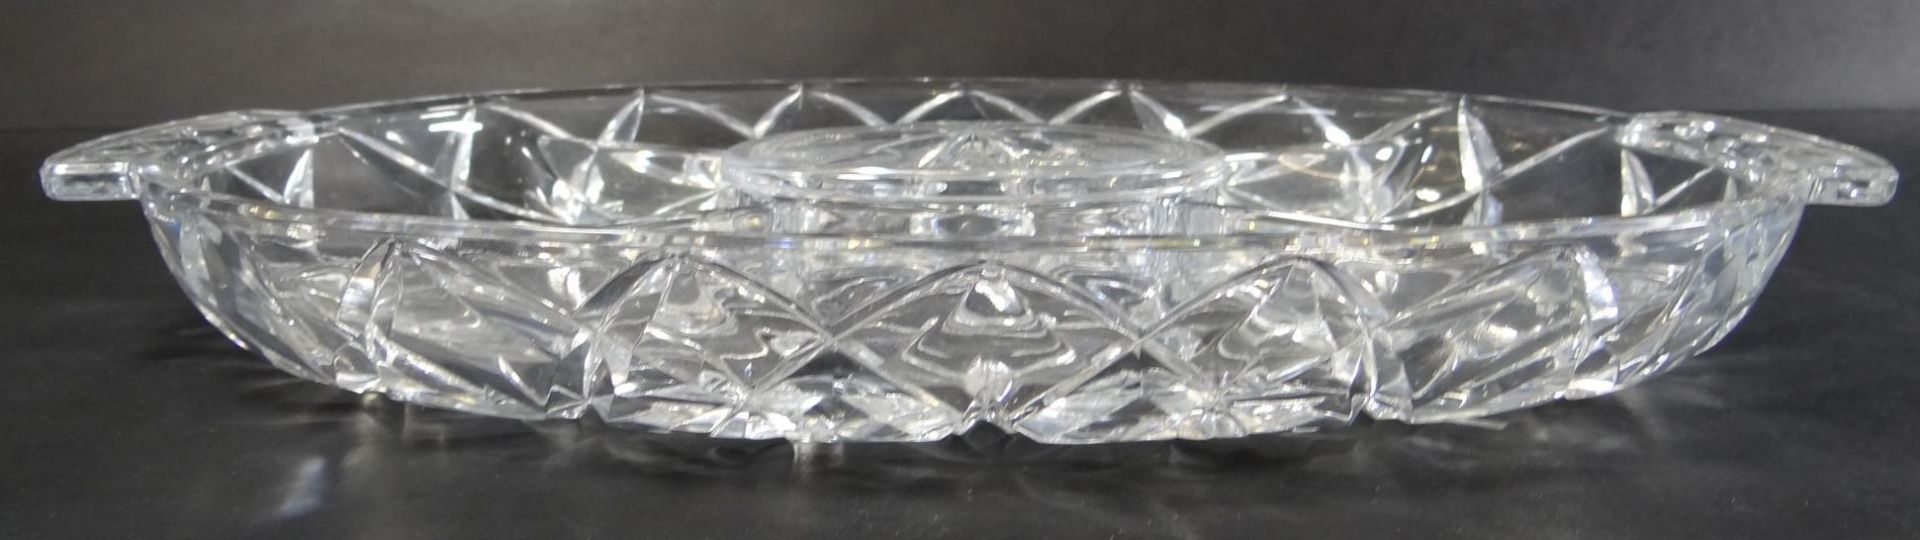 grosses, schweres ovales Kristall-Kabarette, mittig mit Deckel, 35x23 cm - Bild 2 aus 4